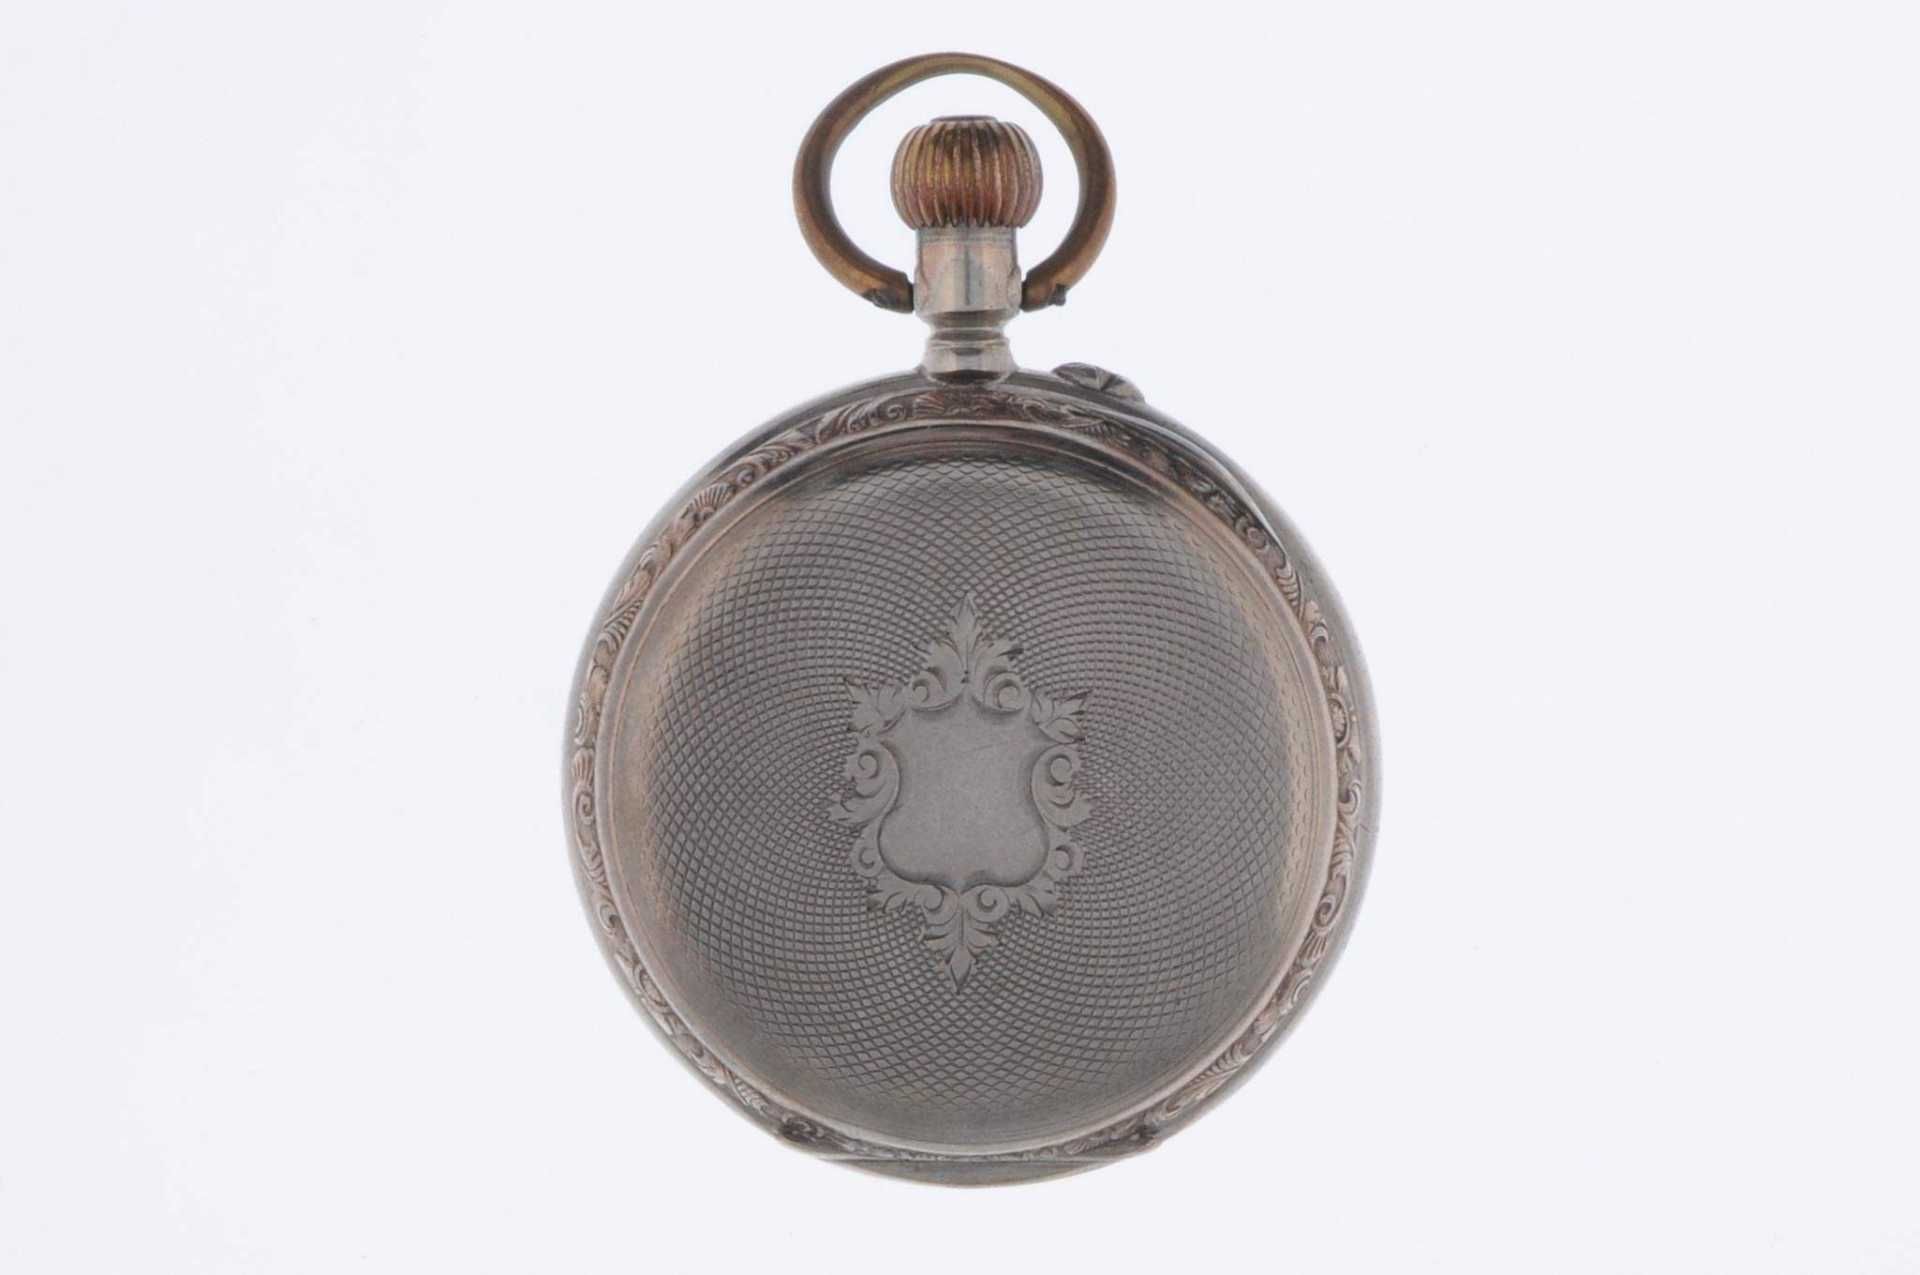 Sprungdeckel-Taschenuhr \Minerva\. Ca. 45mm, um 1880-1900, Schweiz, 800er Silber mit Galoné Verzieru - Bild 2 aus 5